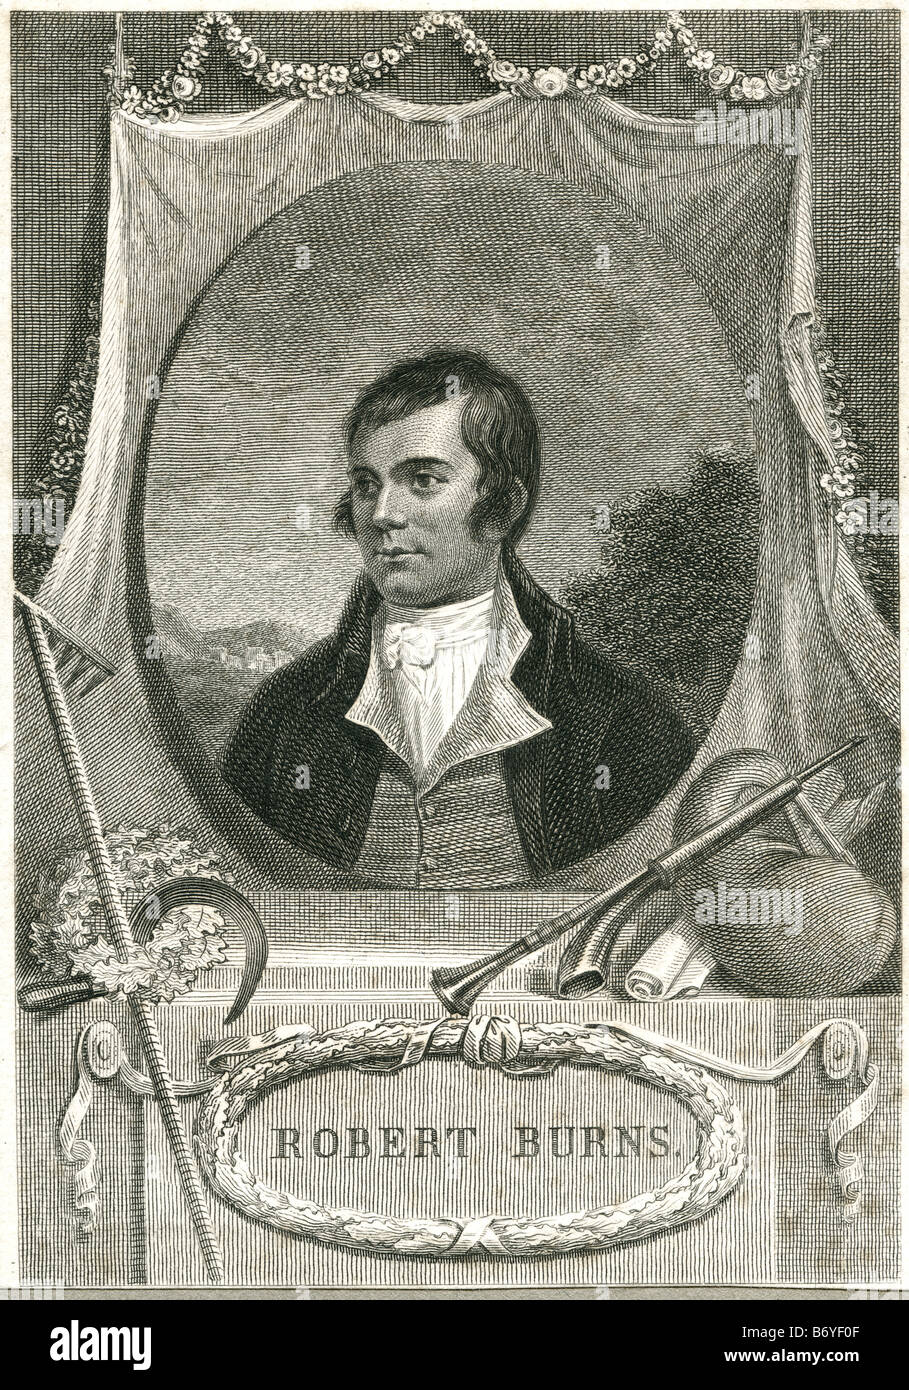 Robert Burns (25 gennaio 1759 - 21 luglio 1796) (noto anche come Rabbie Burns, Scozia preferito del figlio, Plowman poeta, Foto Stock